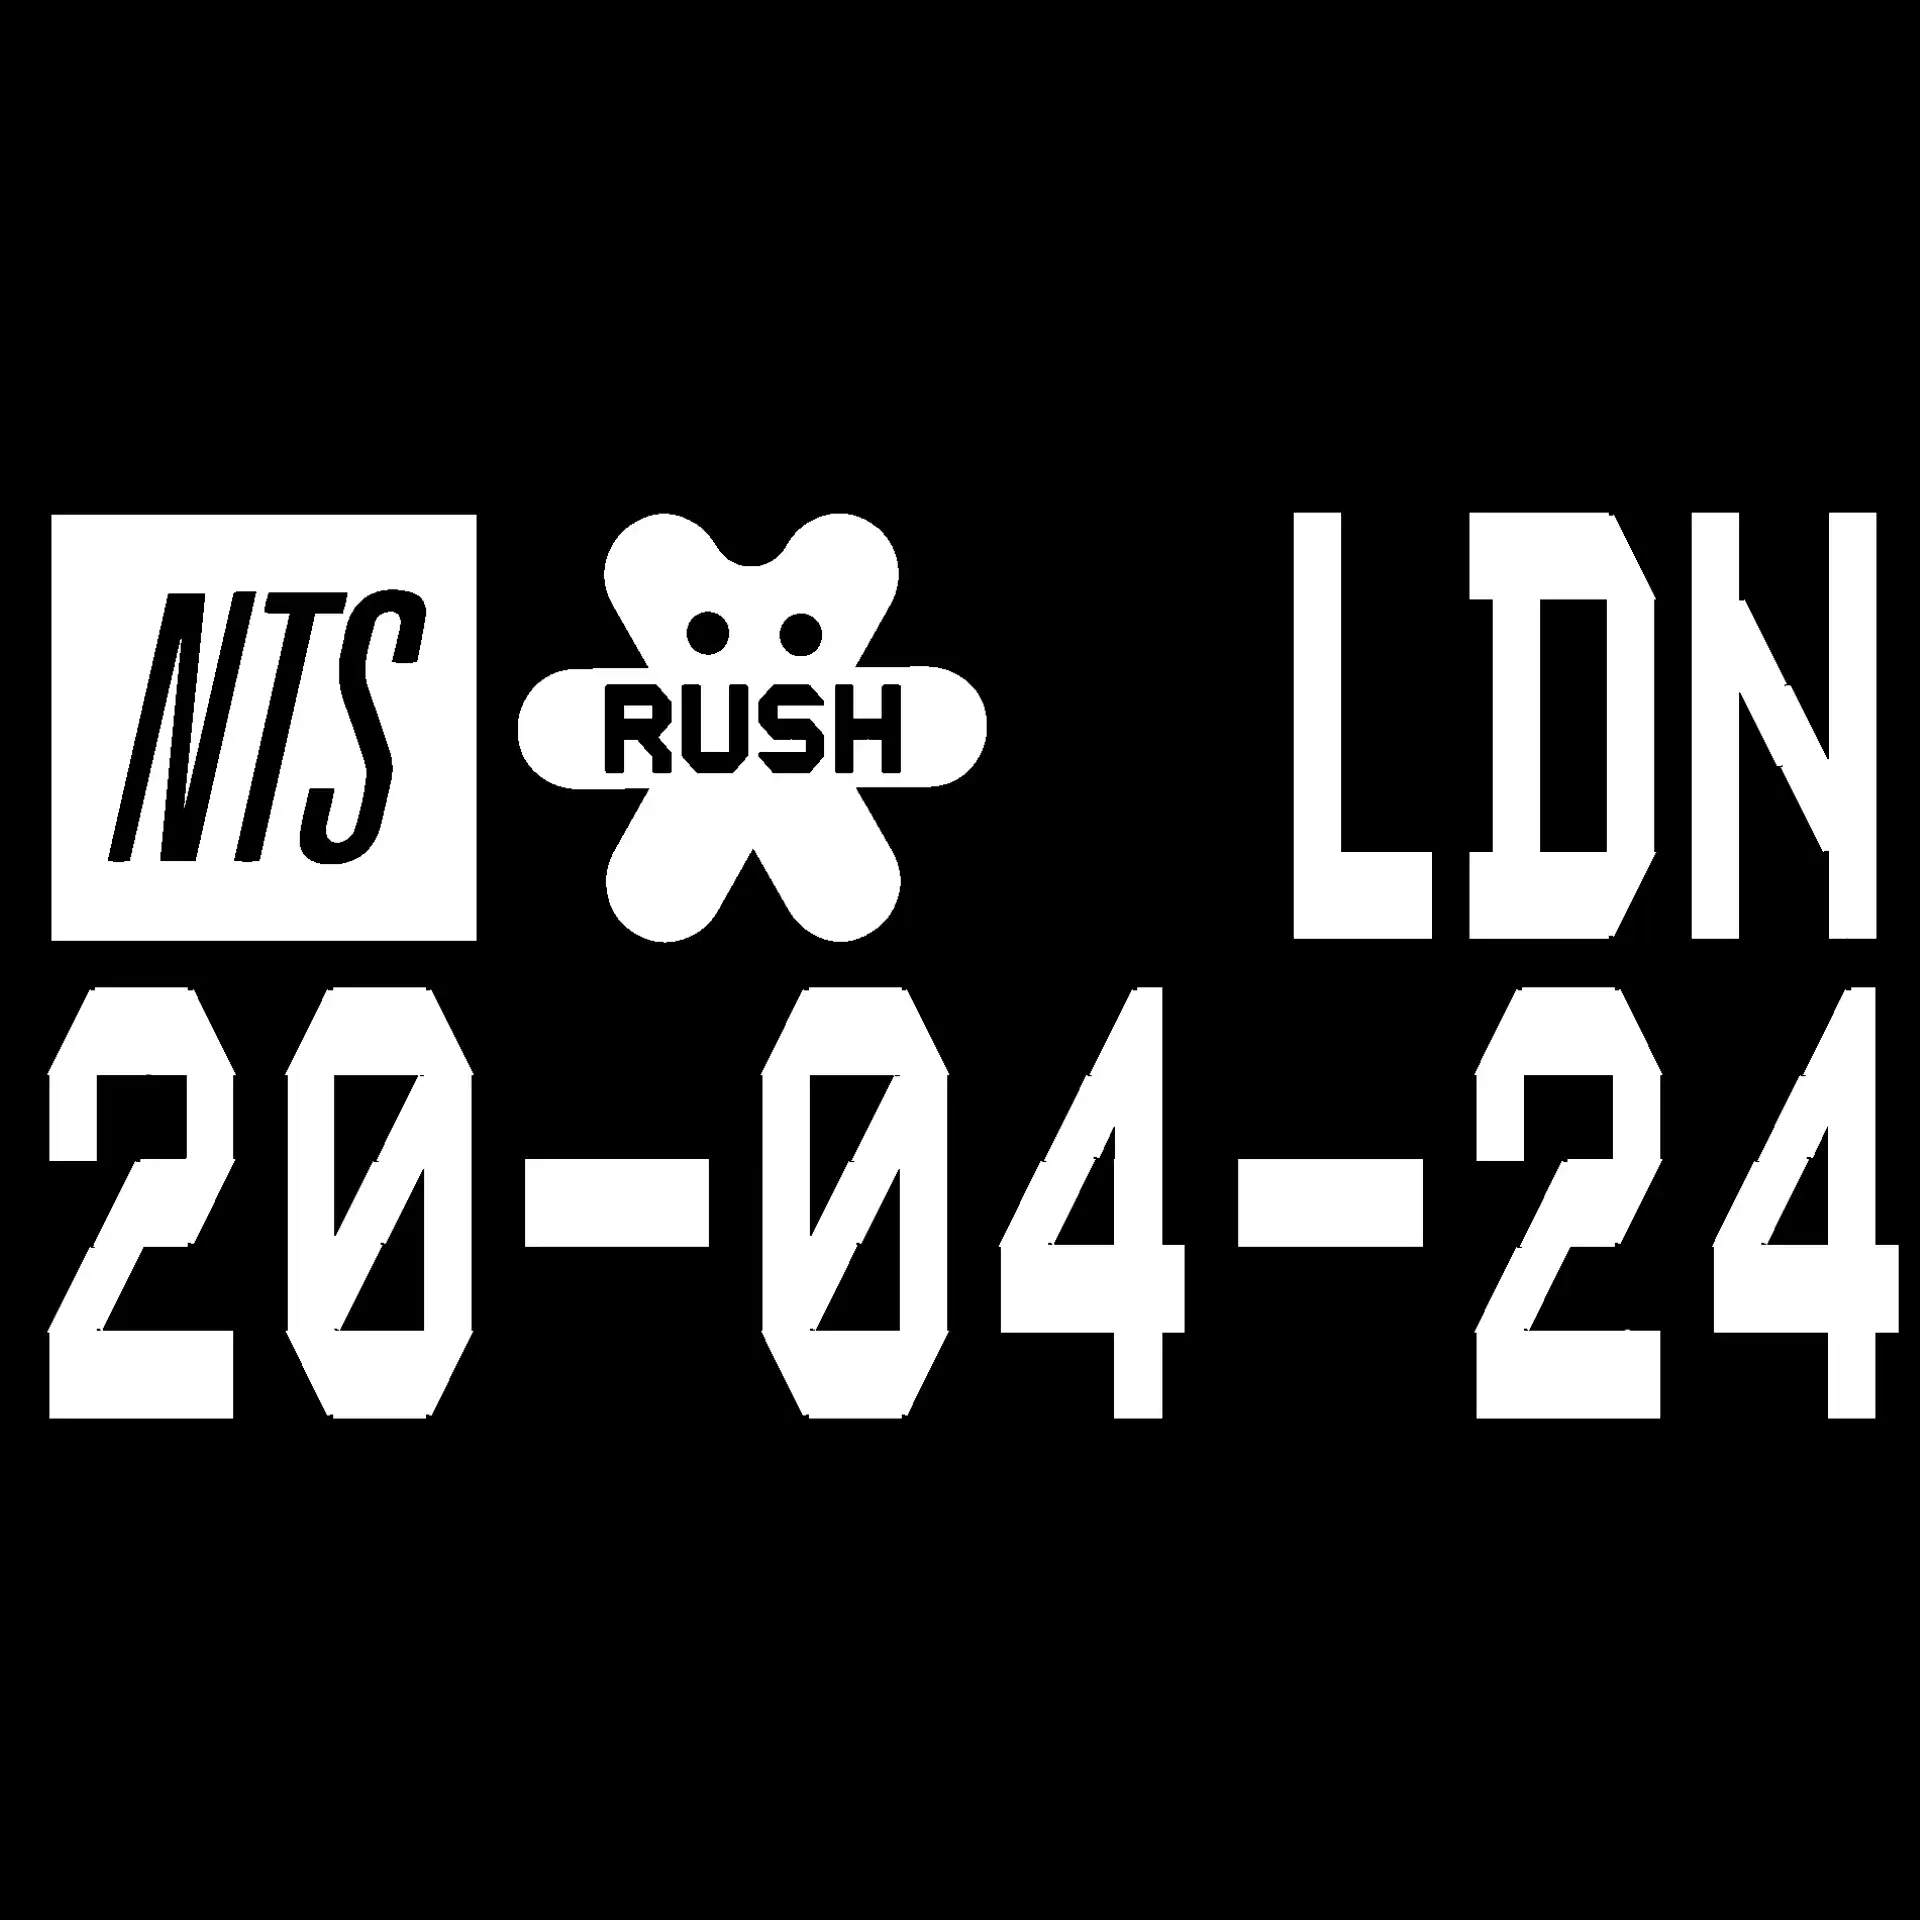 NTS RUSH - London - フライヤー裏